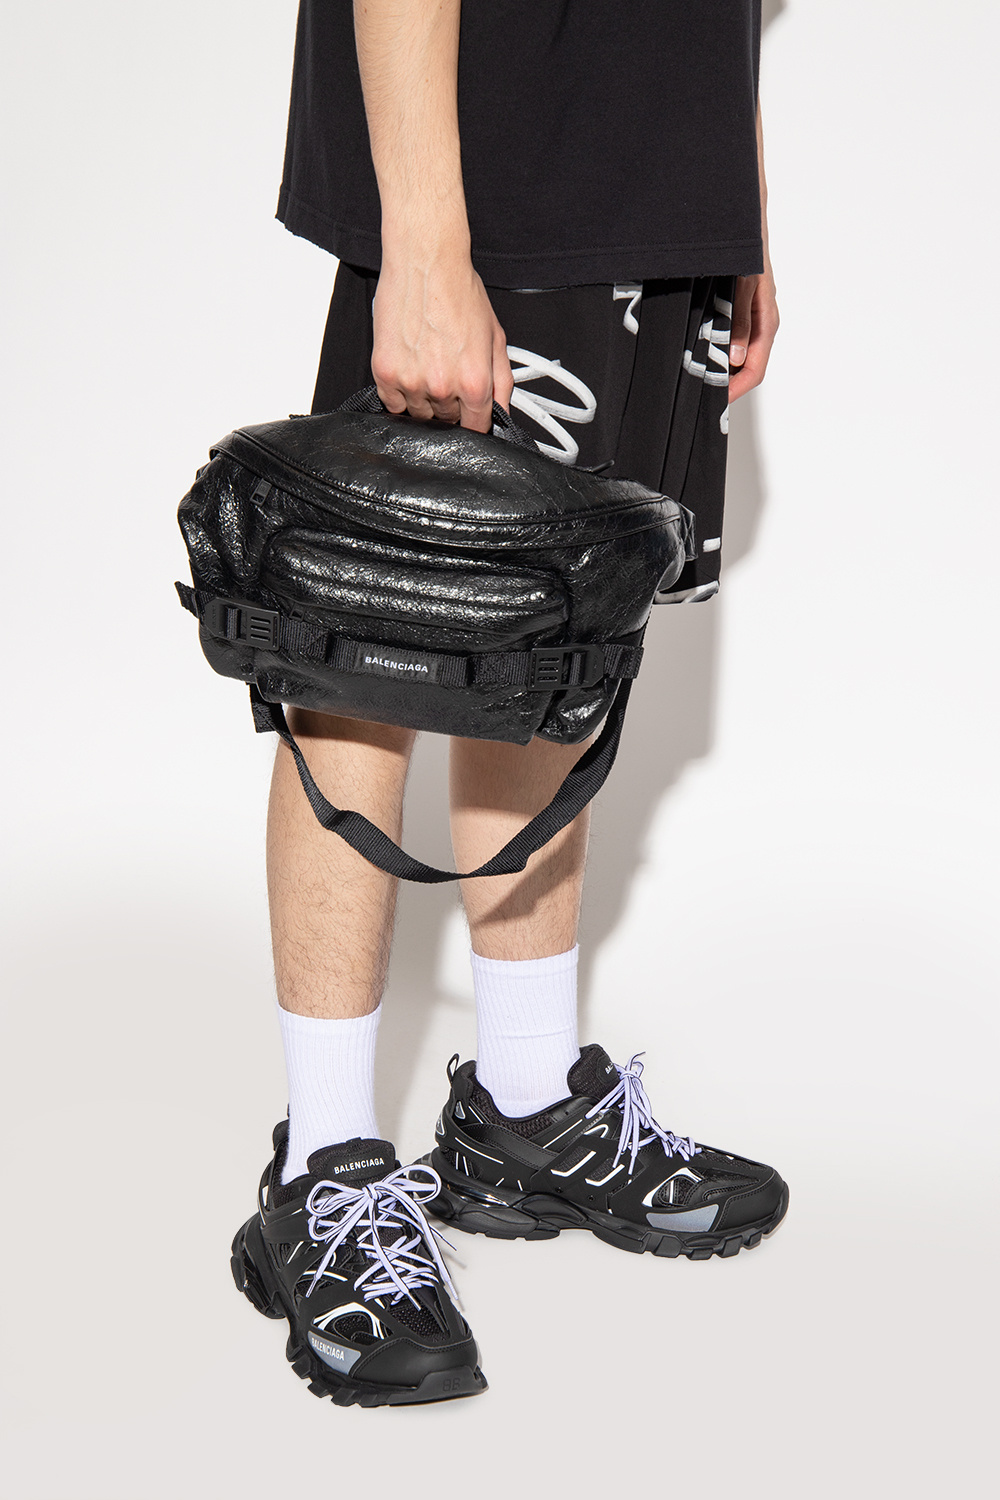 Balenciaga ‘Army’ belt Medium bag